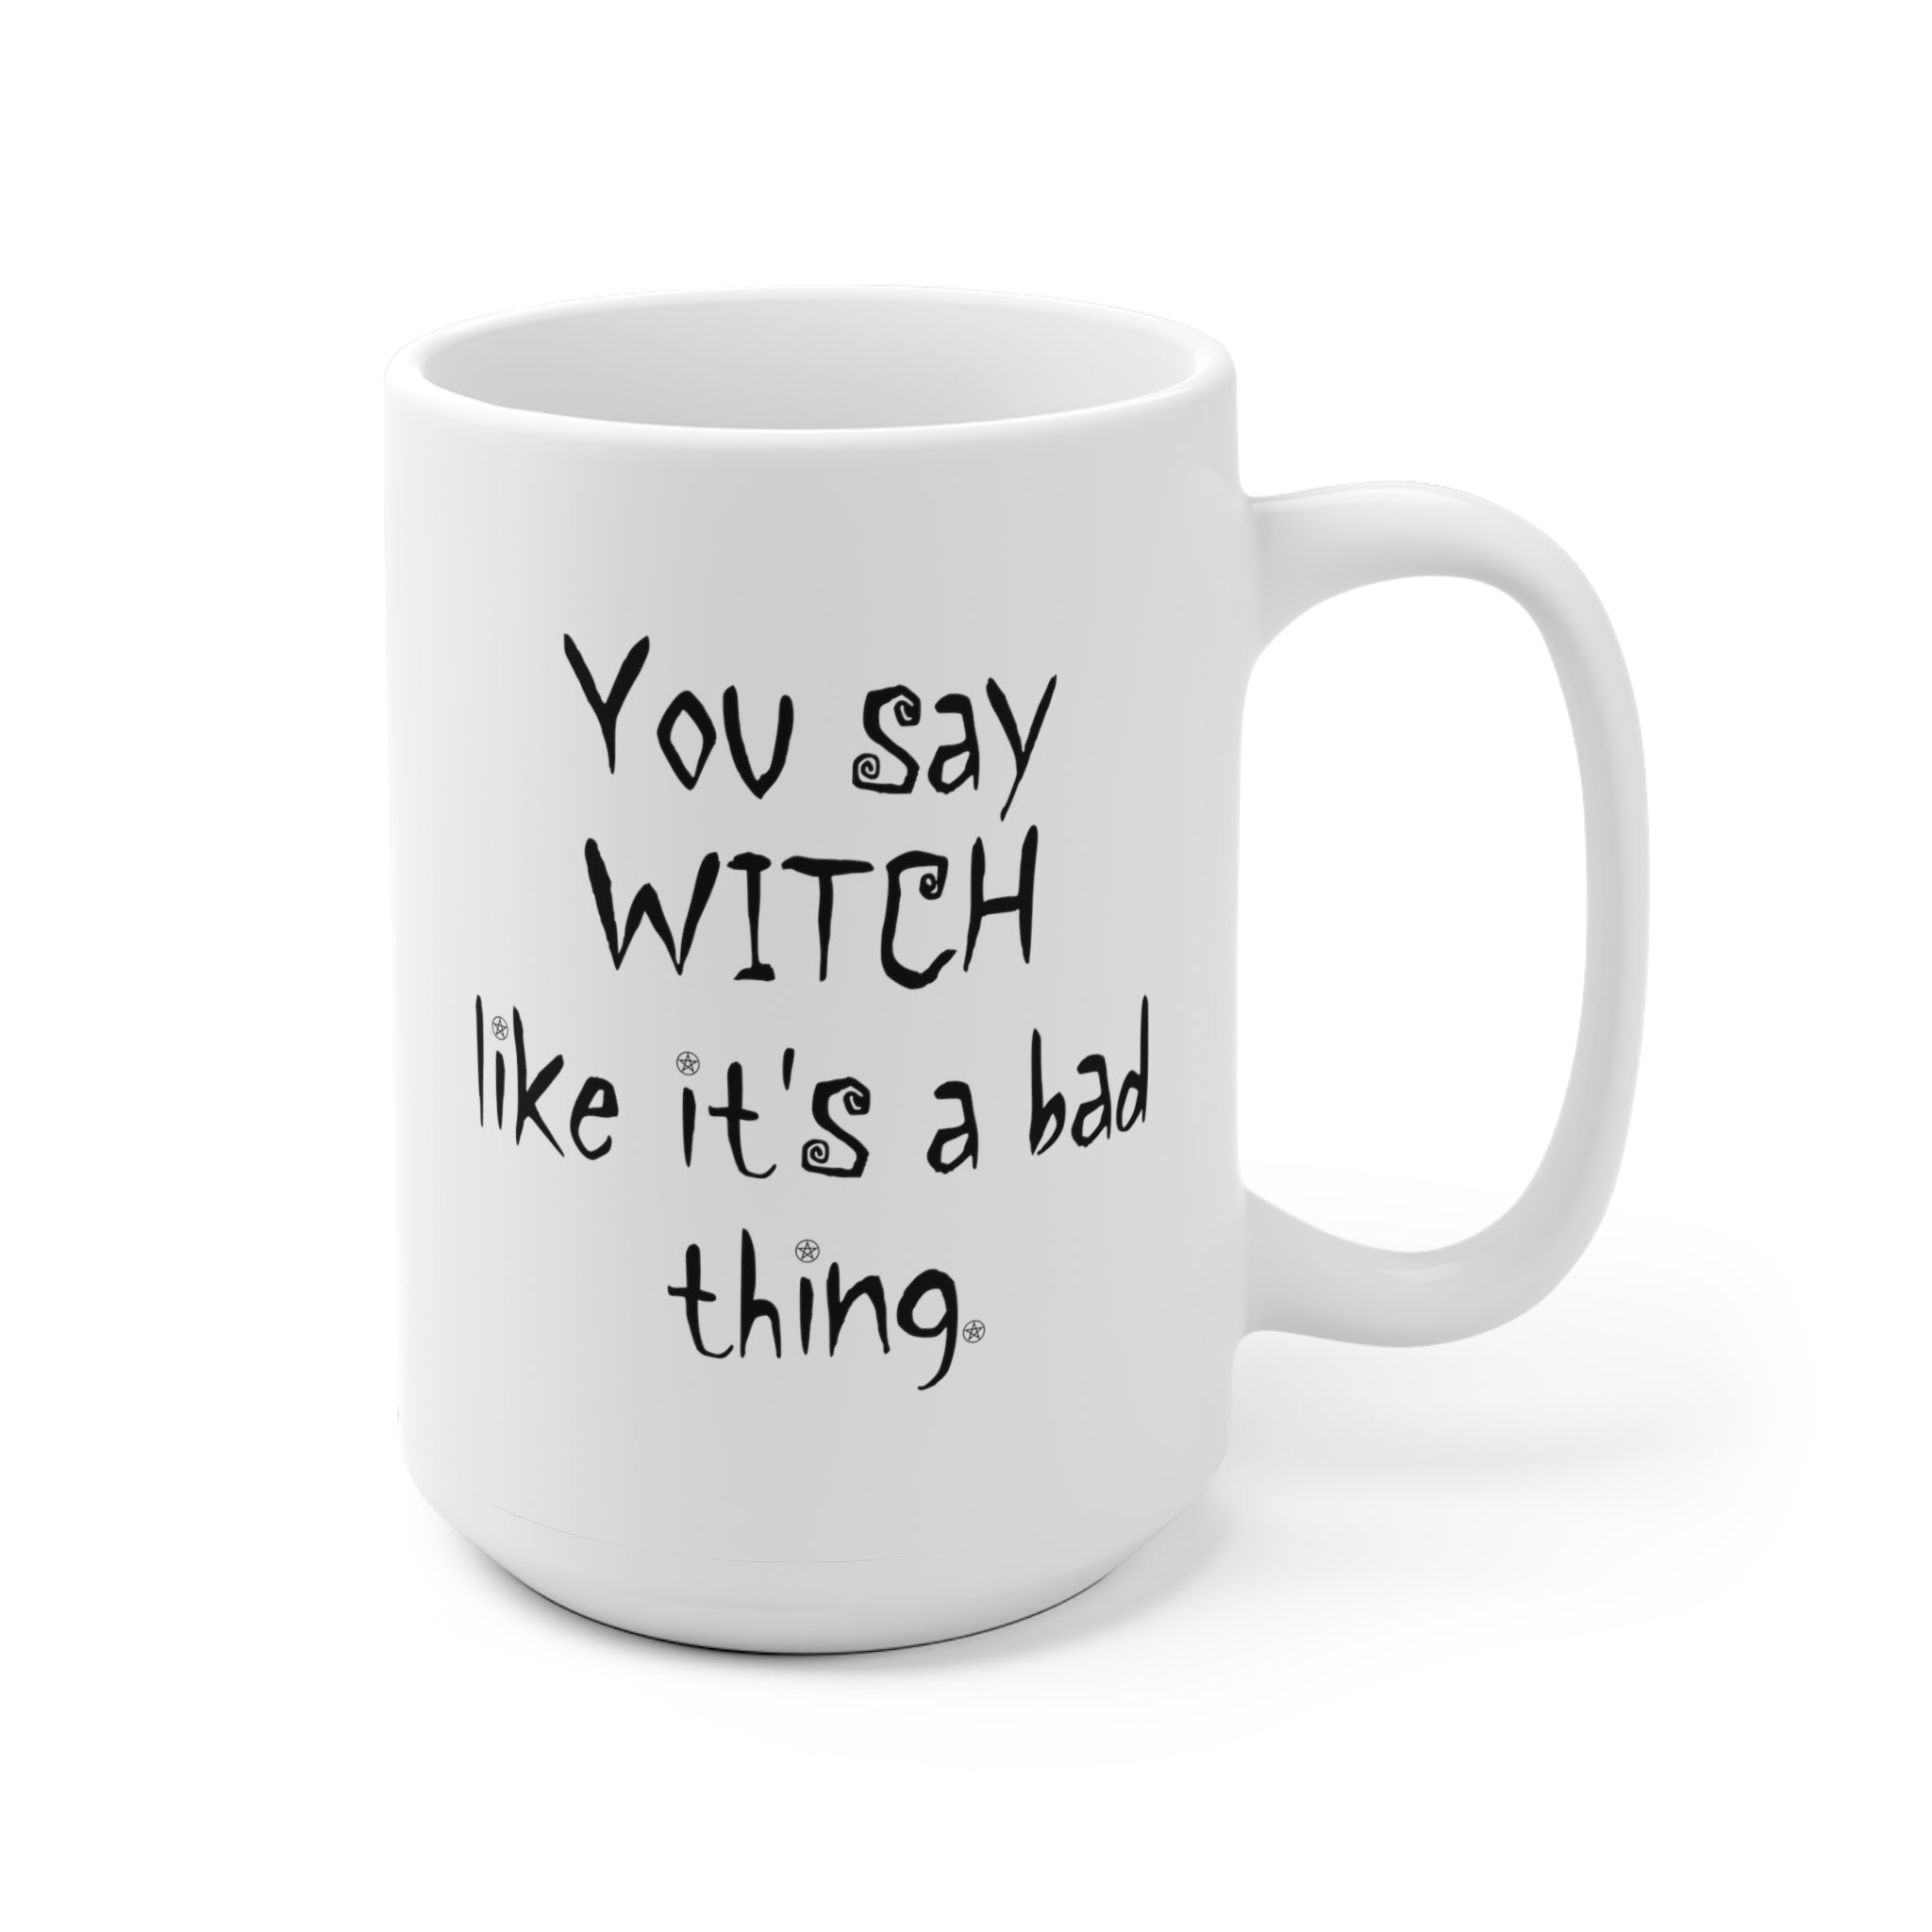 White Ceramic Mug - You Say Witch